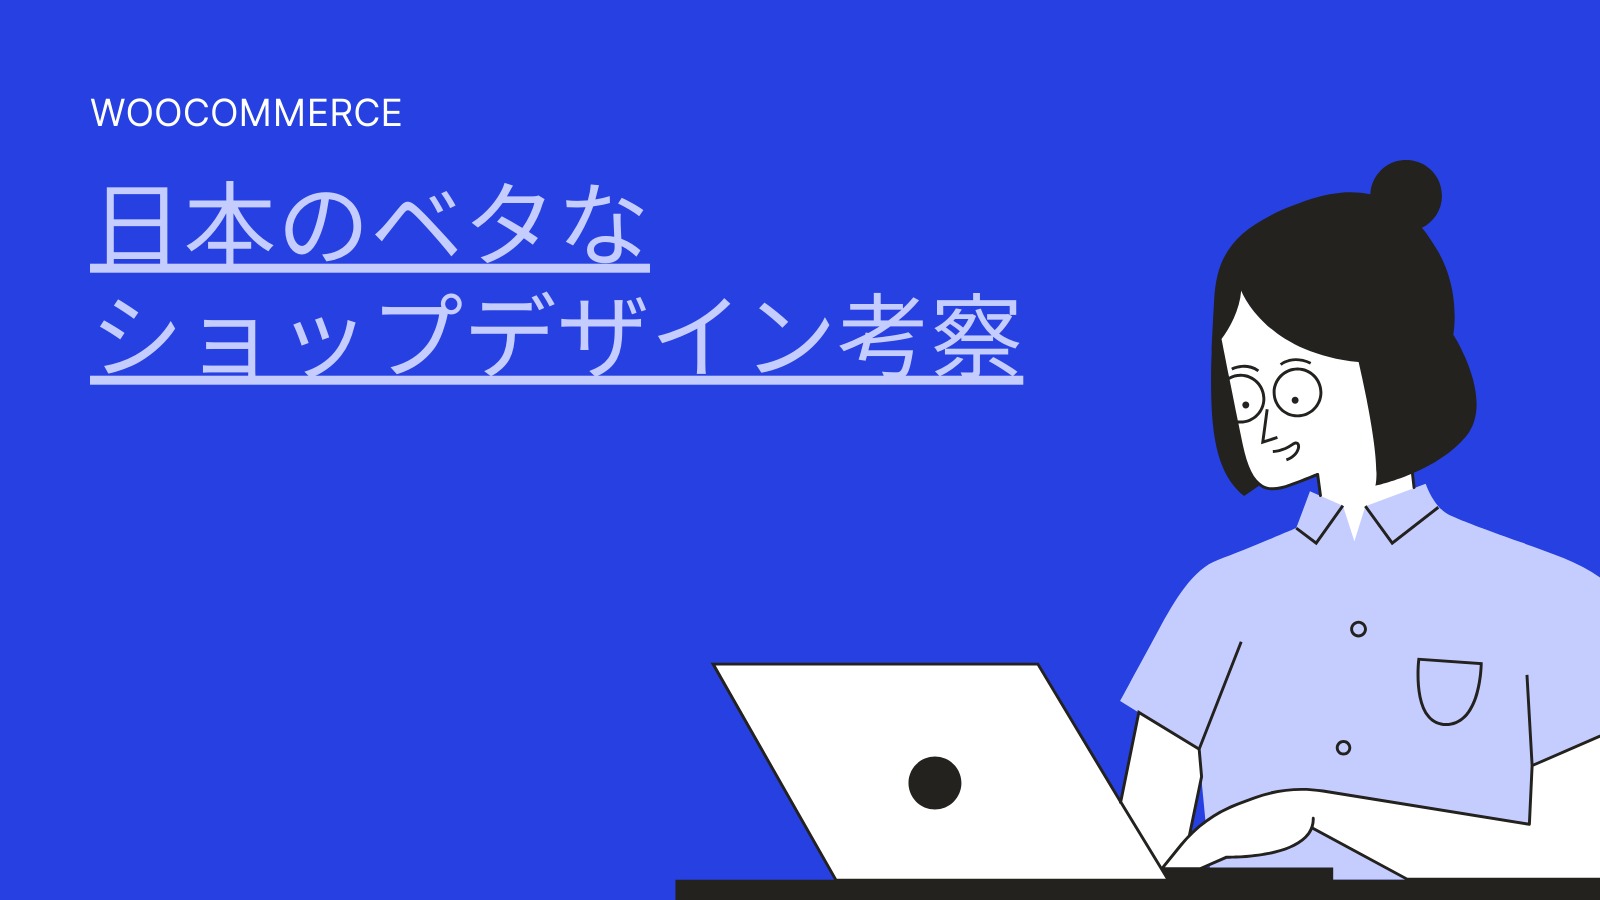 『日本のベタなネットショップデザイン』というブログのイメージ画像です。